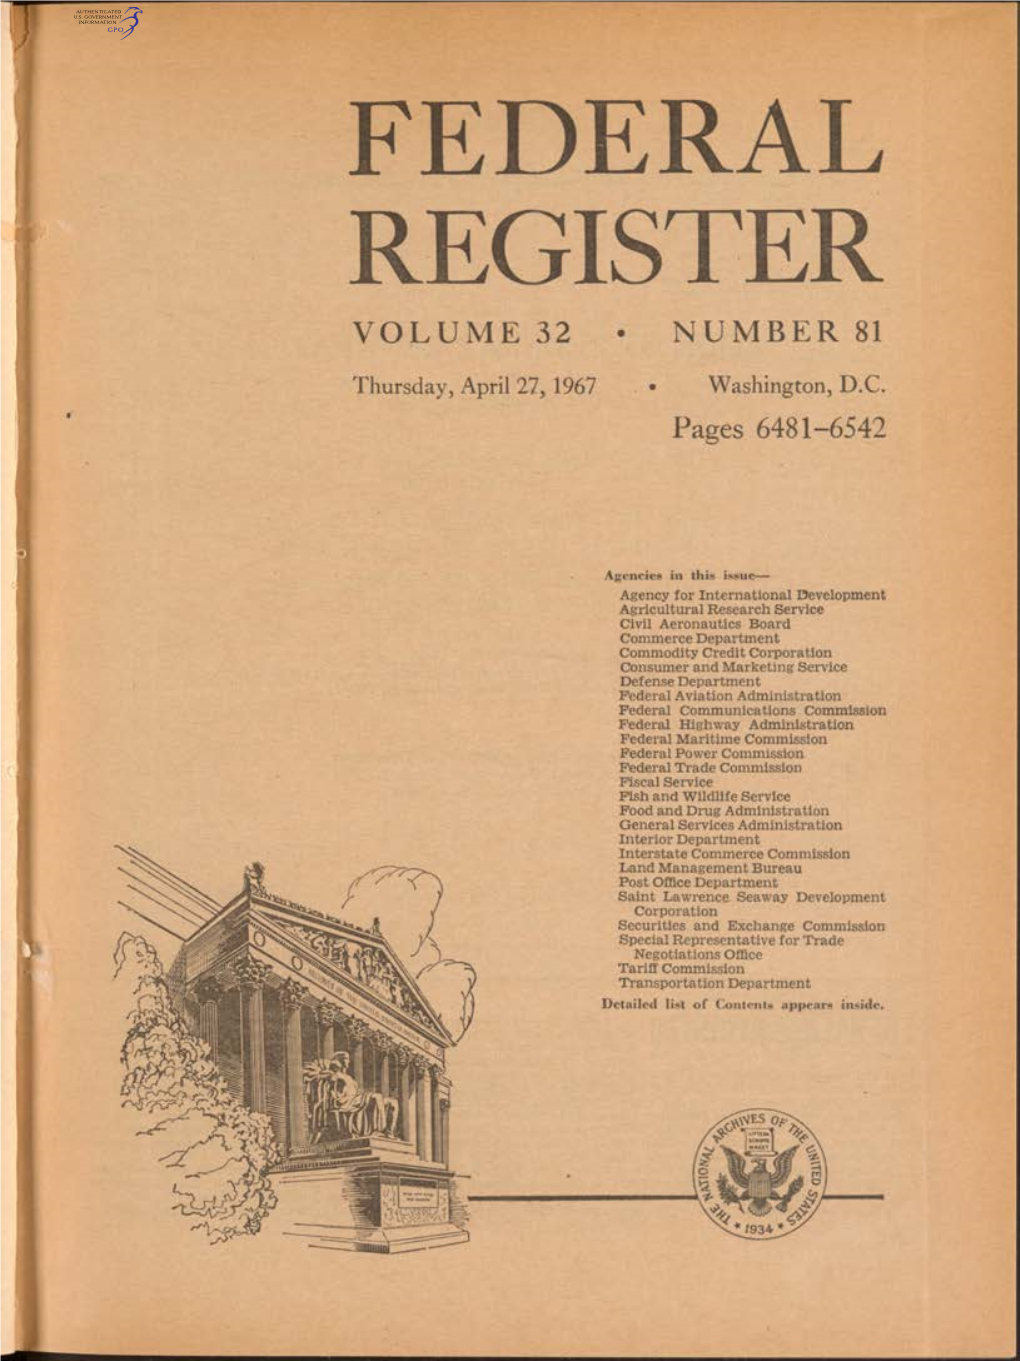 Federal Register Volume 32 • Number 81